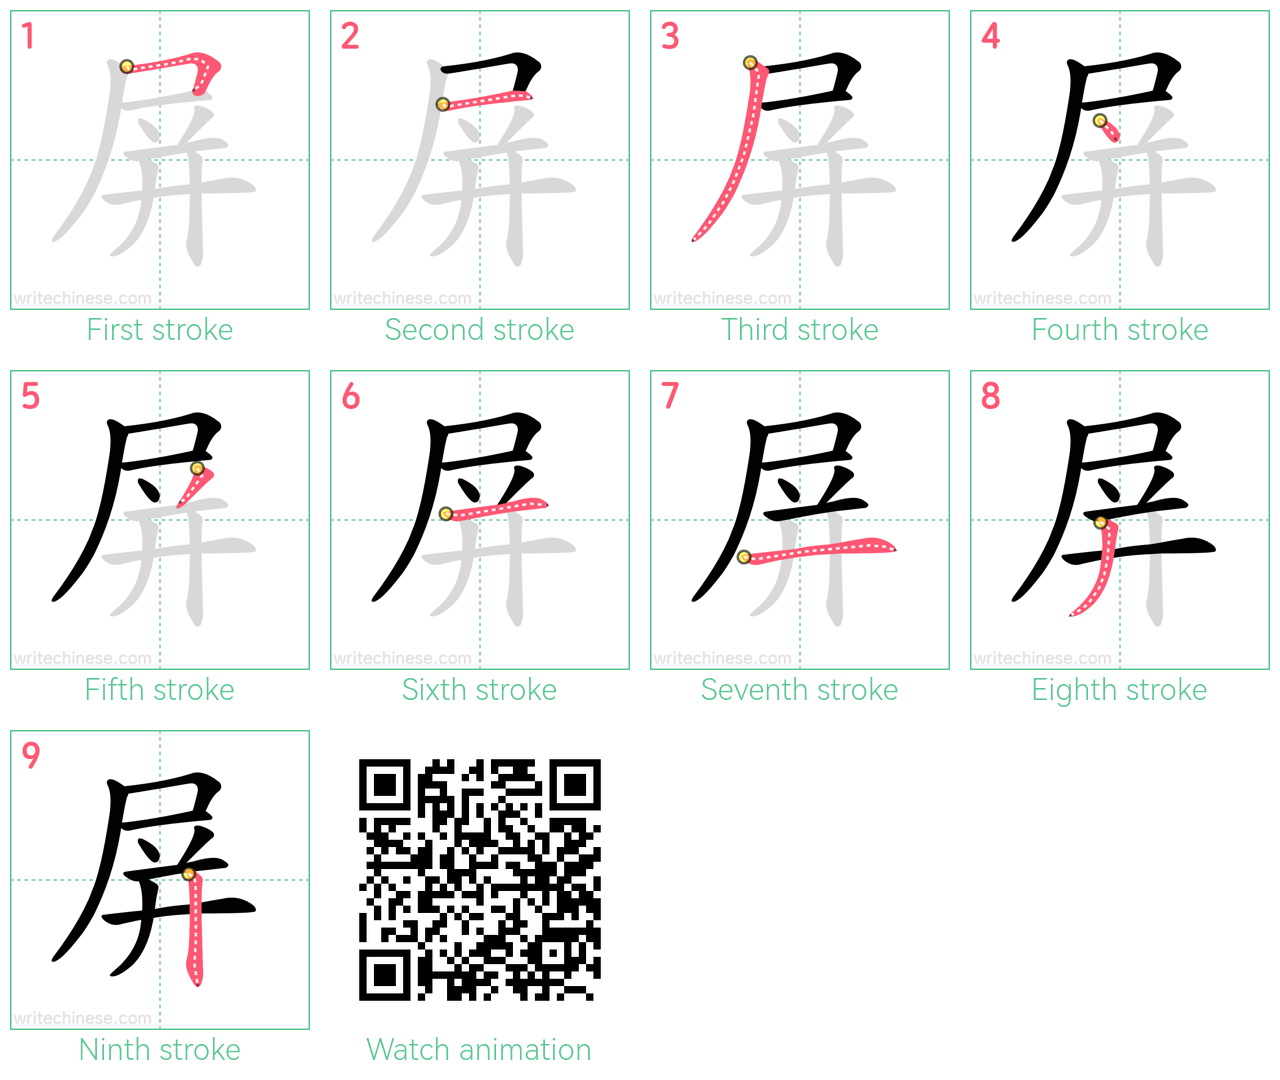 屏 step-by-step stroke order diagrams